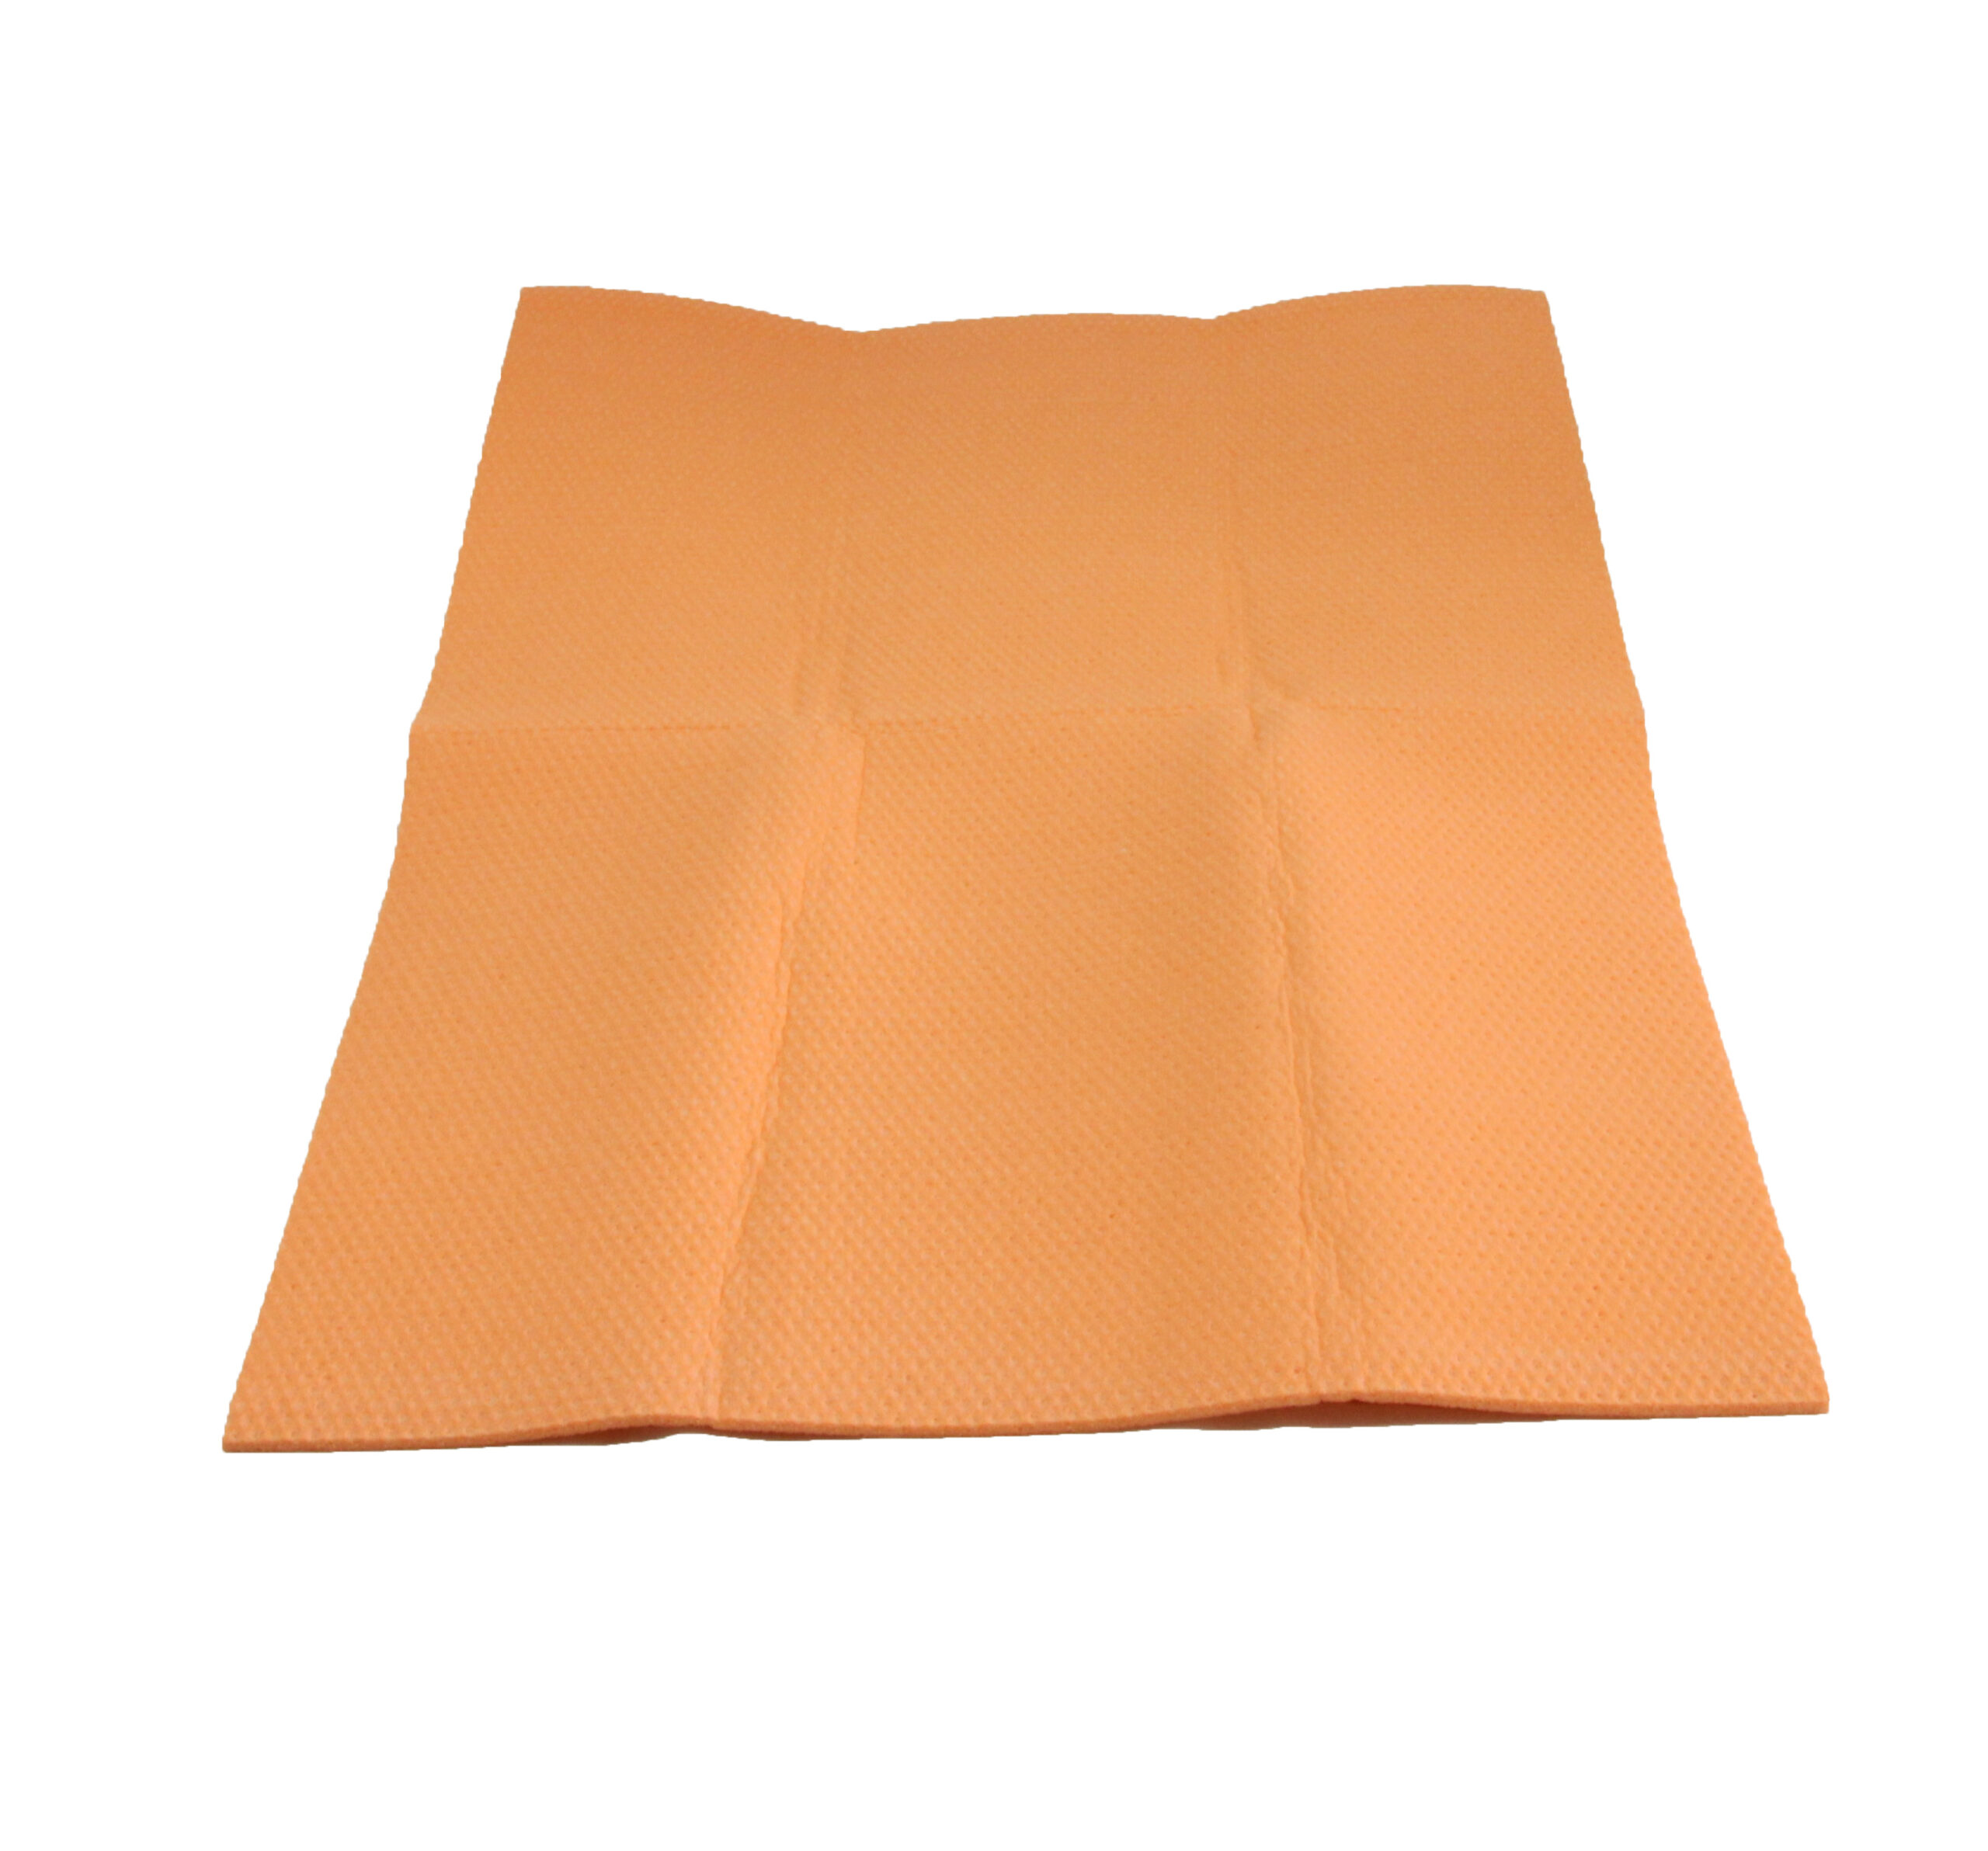 Baylee Absorbent Orange Sponge Cloth 27" x 16" - 199453